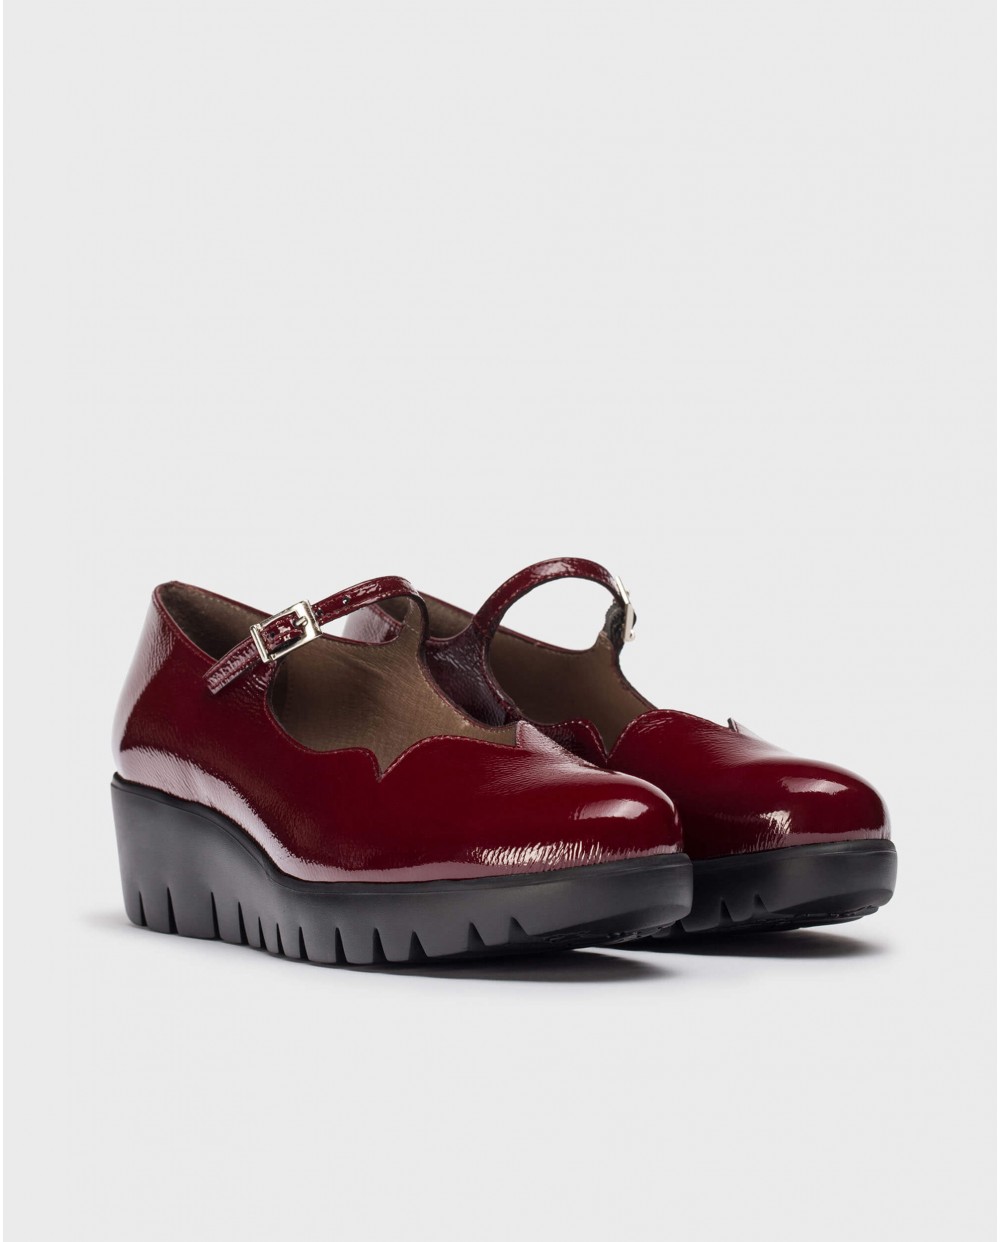 Burgundy SEVILLA shoe